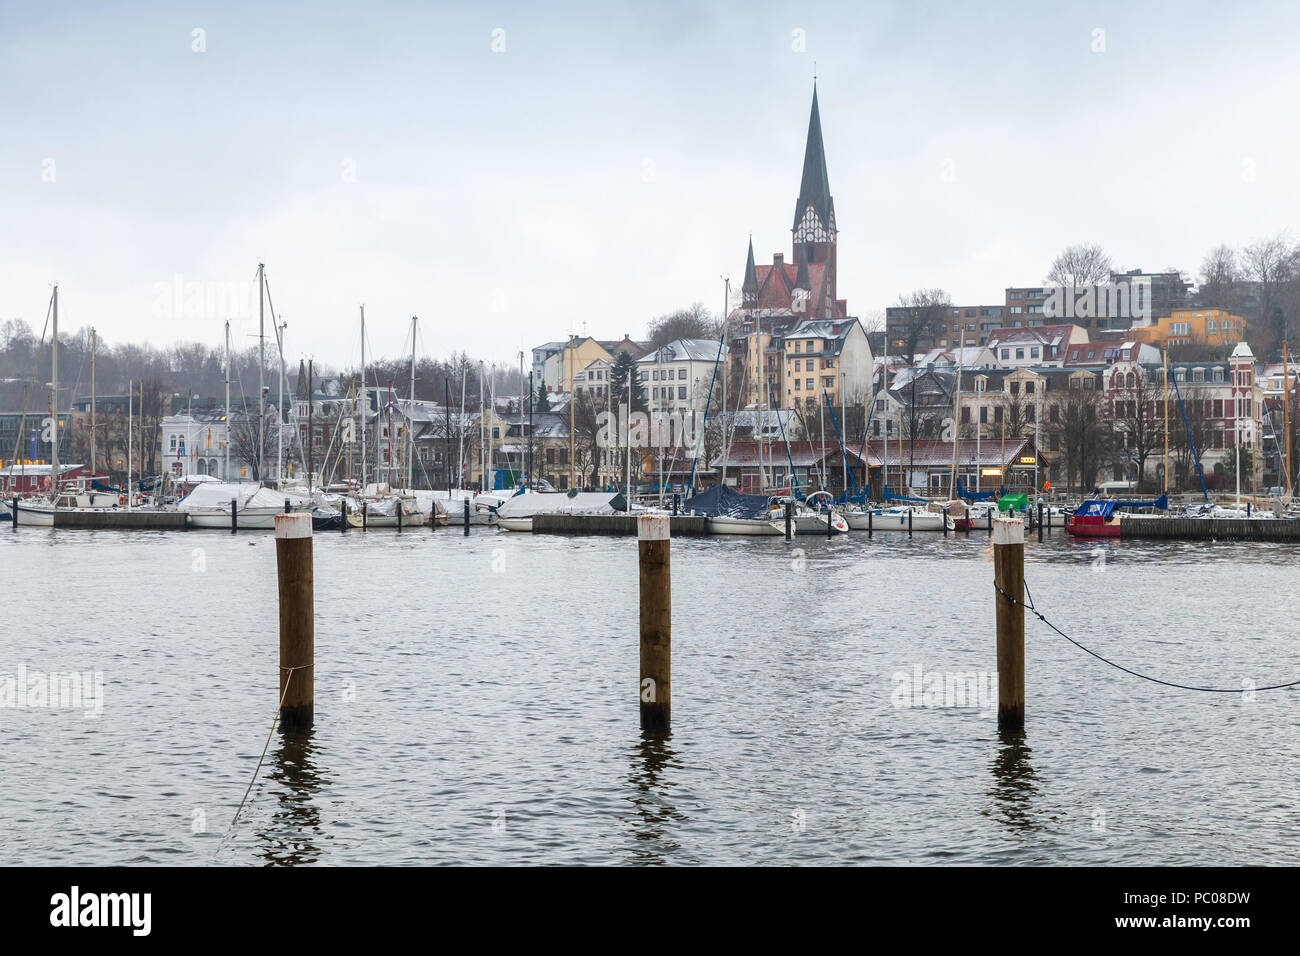 Flensburg Stadt im Winter, Deutschland. Küsten Skyline mit hölzernen Anlegestellen Spalten in Wasser Stockfoto